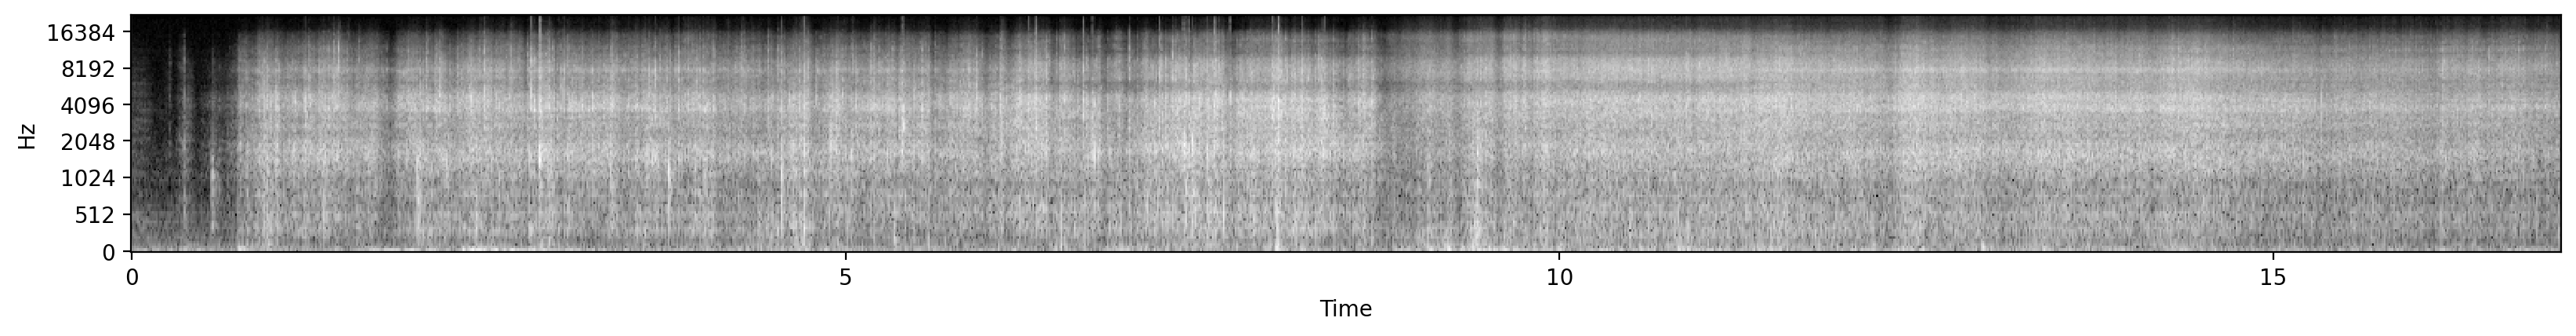 ガサゴソ音のメルスペクトログラム